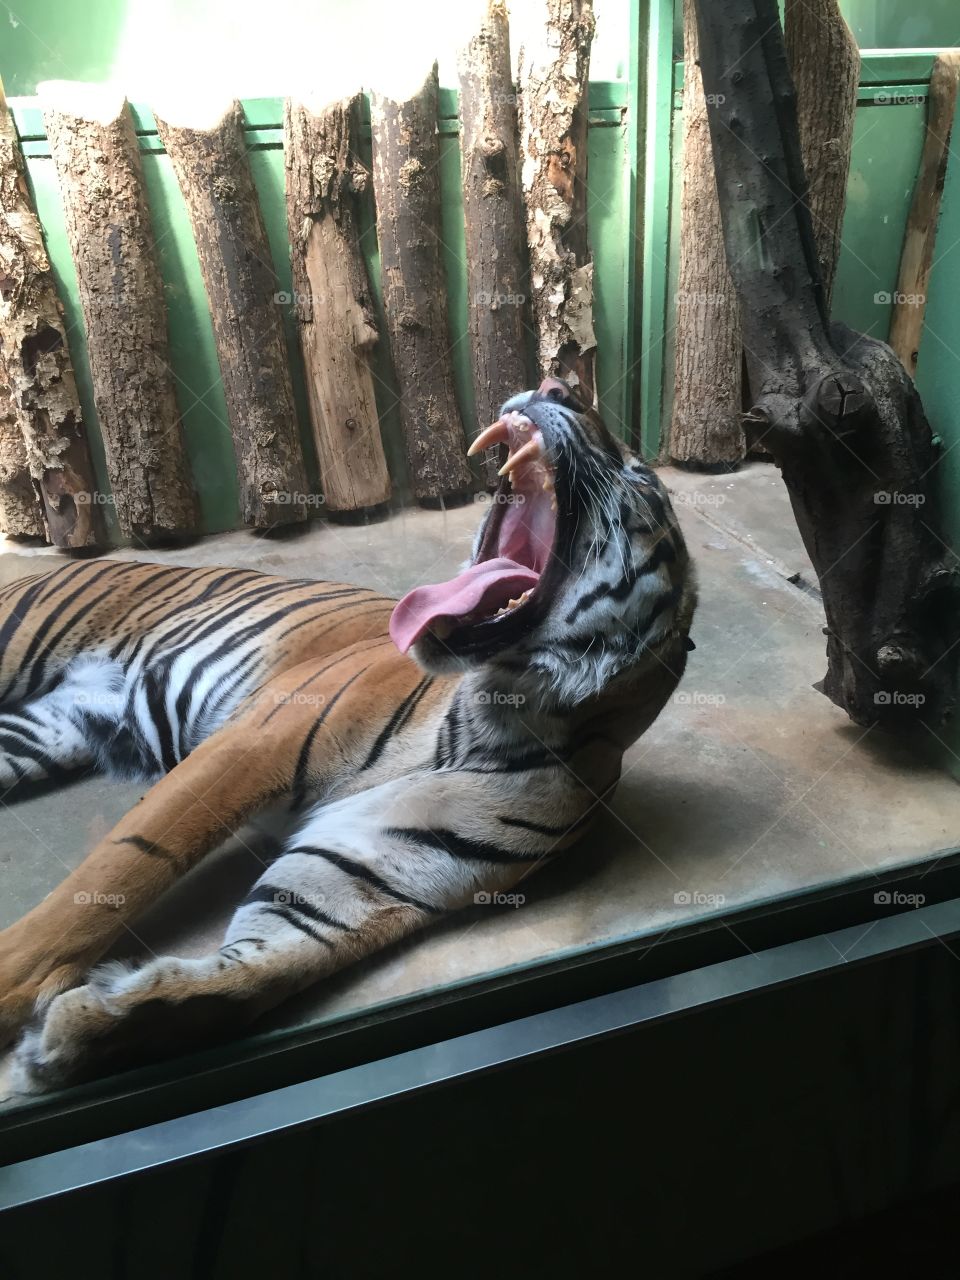 Tiger yawning 